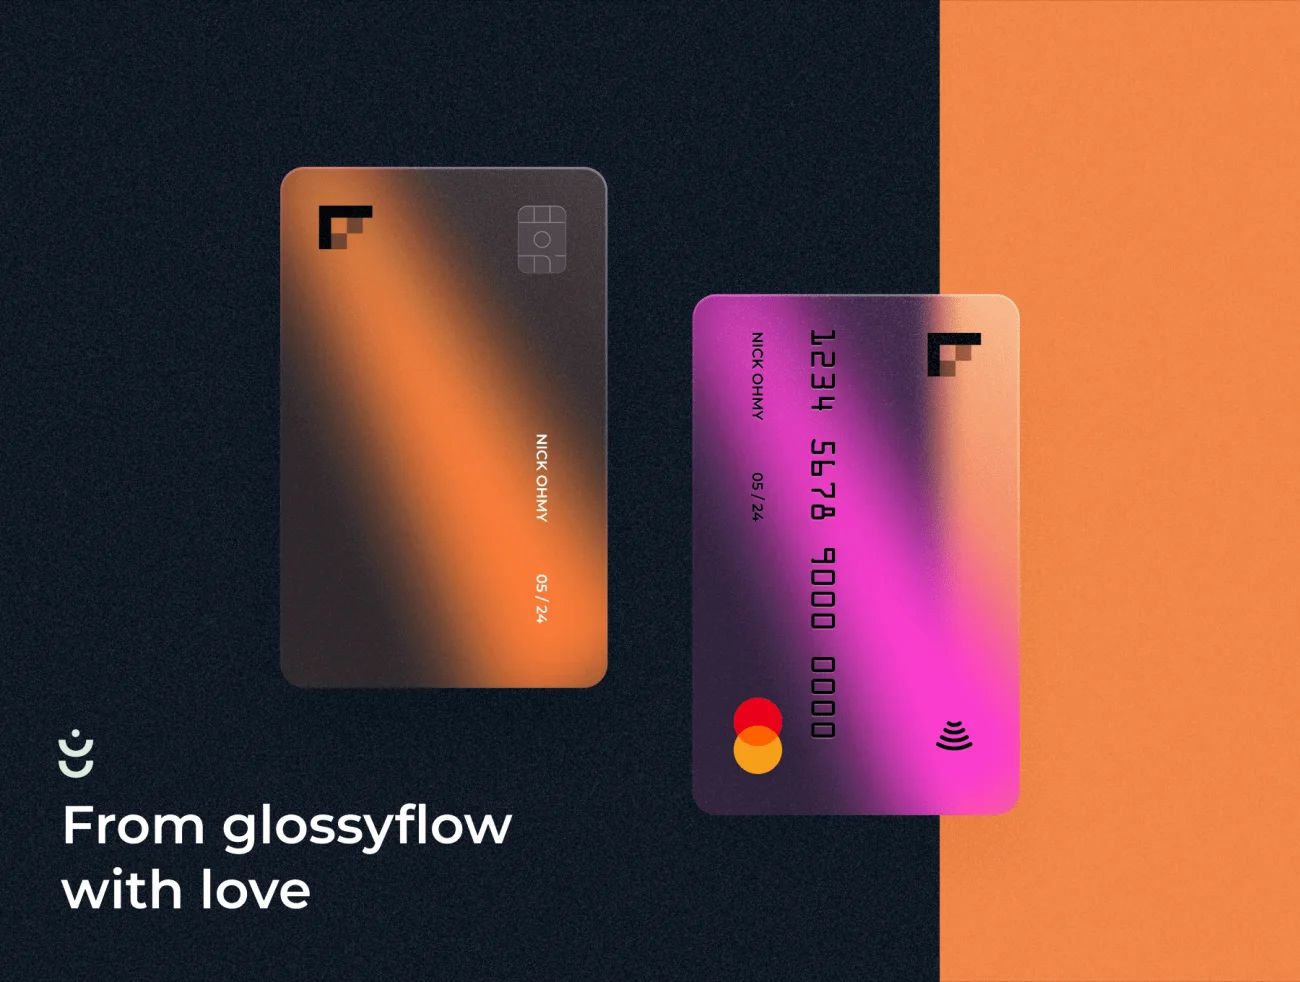 Glossy Bank Card Kit 半透明毛玻璃轻拟物风格银行卡figma样机套件-产品展示、优雅样机、创意展示、办公样机、名片杂志、实景样机、样机、简约样机-到位啦UI